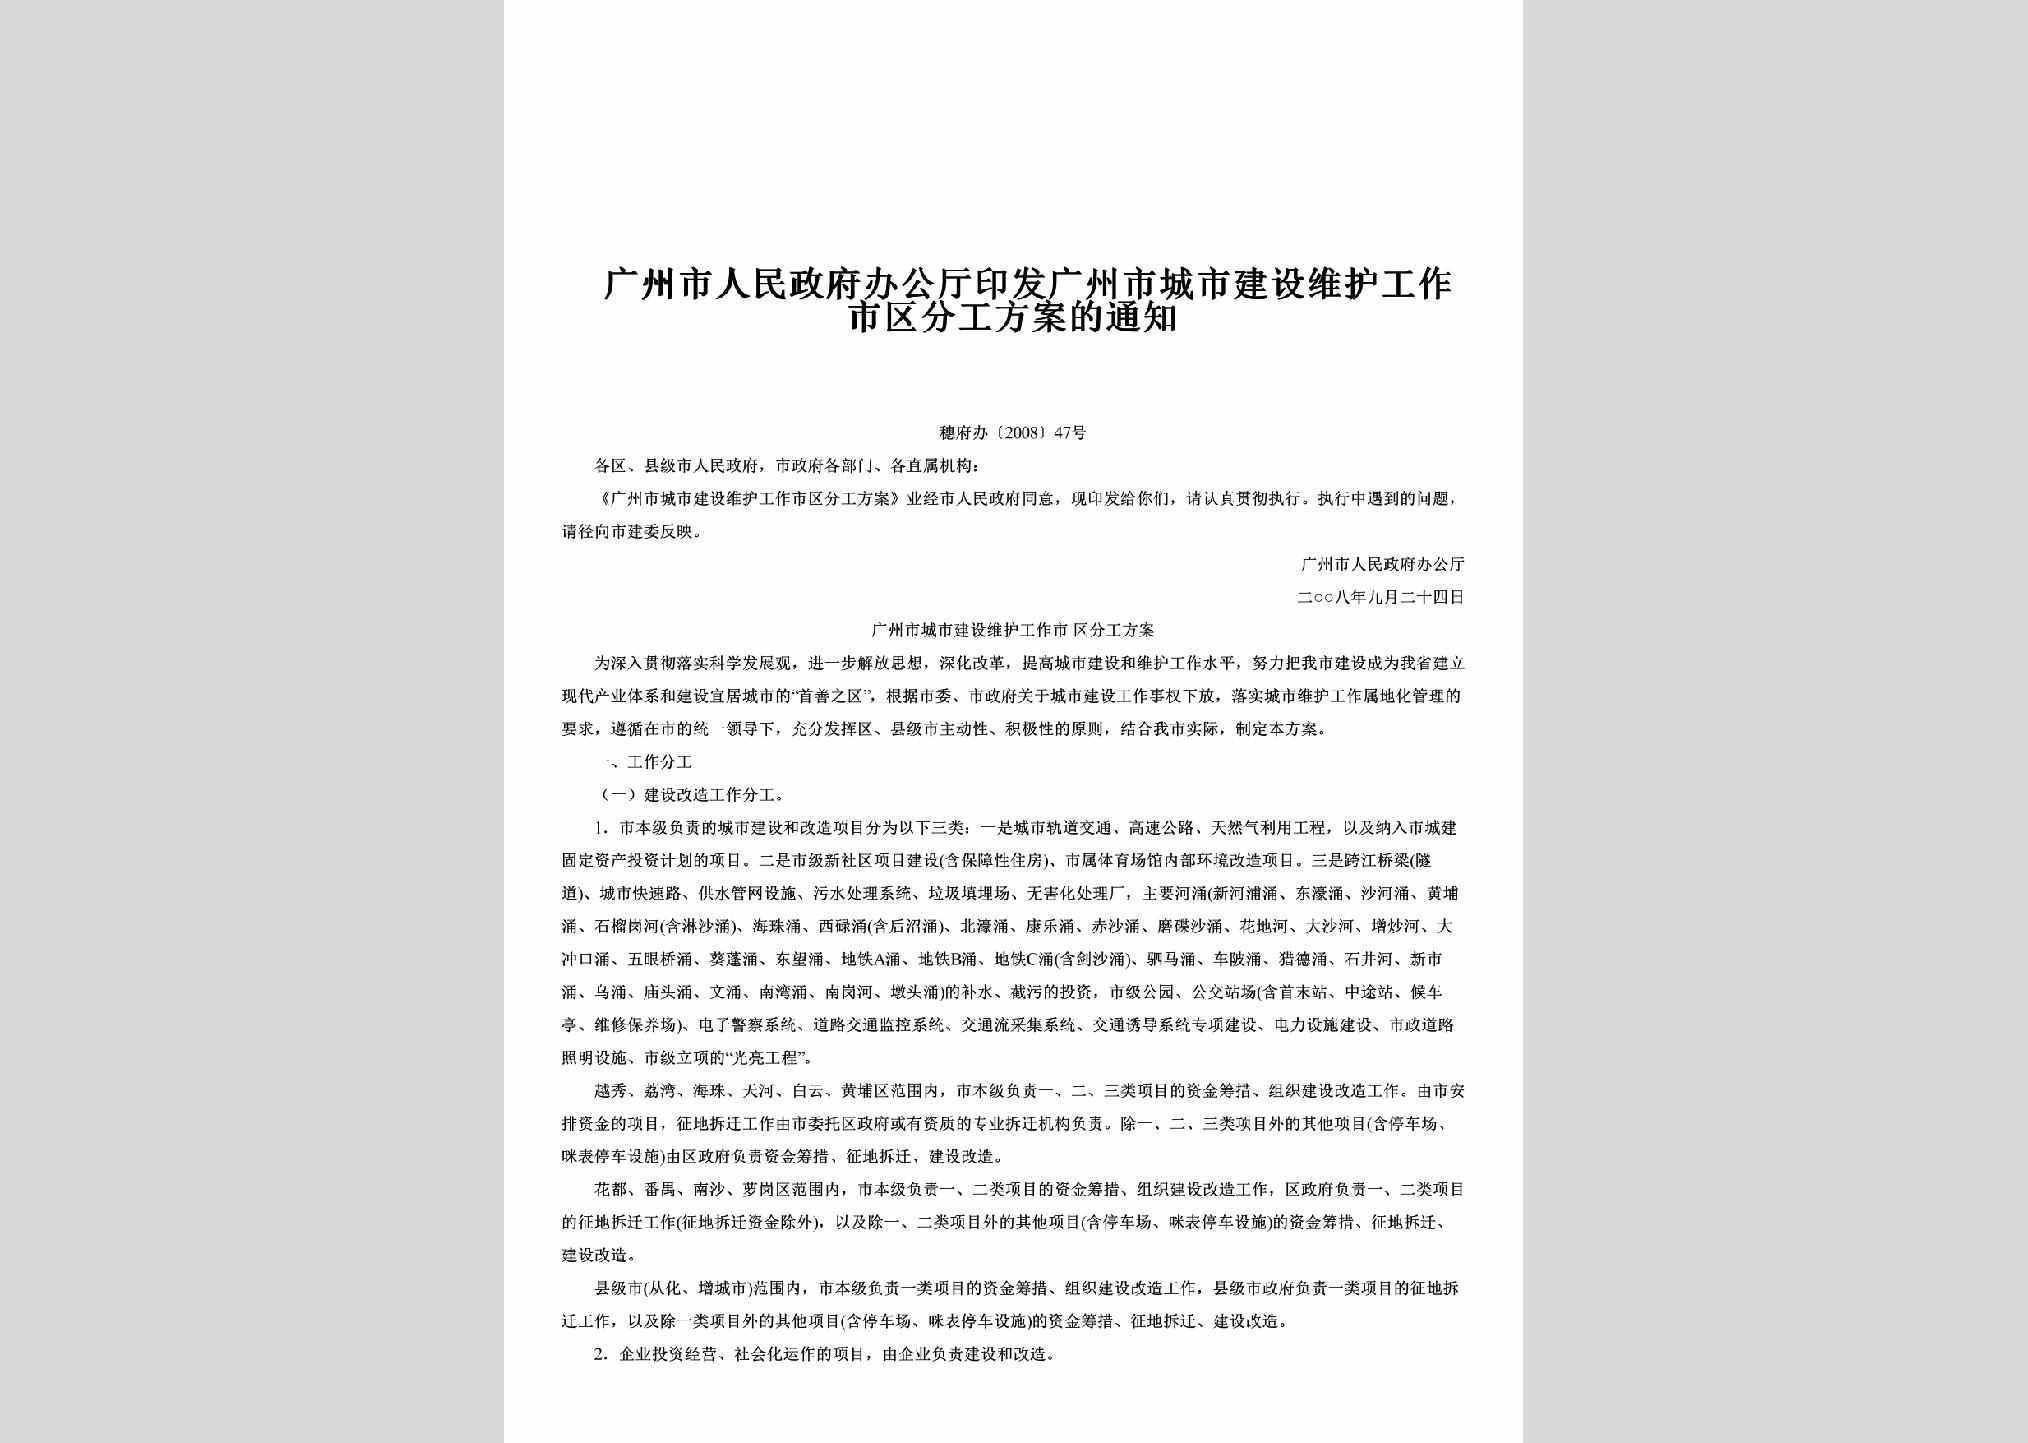 穗府办[2008]47号：印发广州市城市建设维护工作市区分工方案的通知